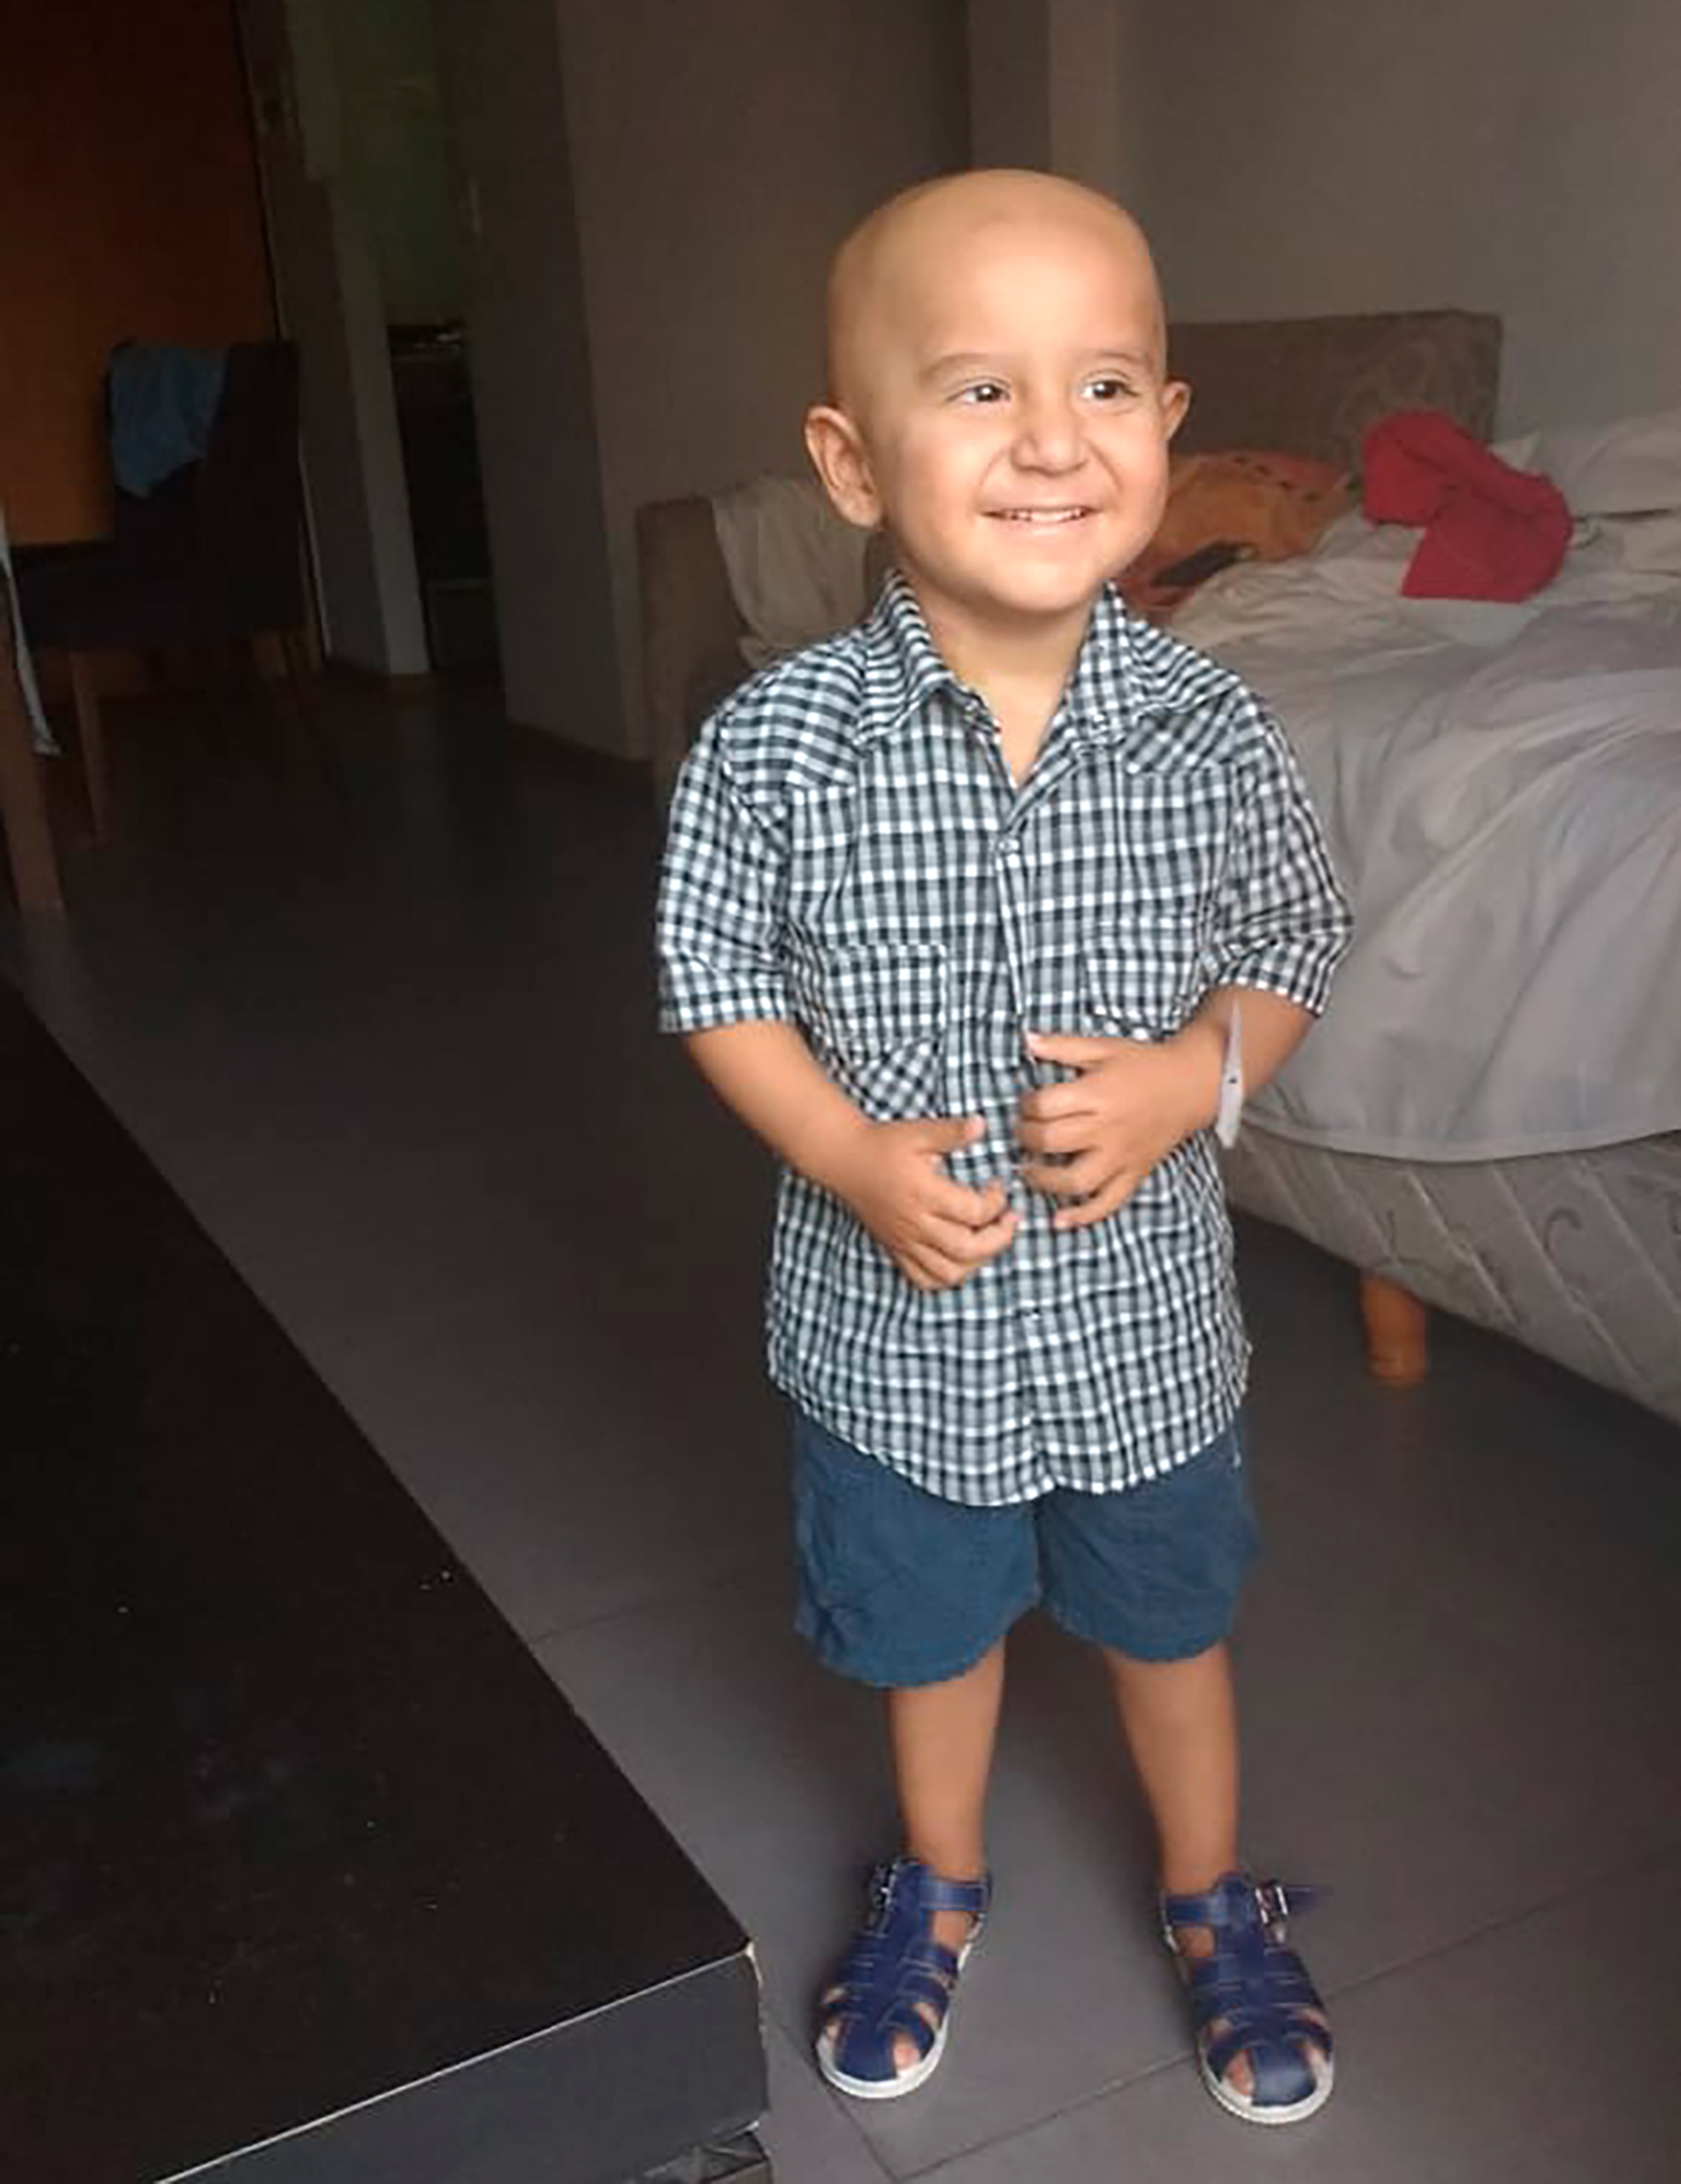 Al pequeño le detectaron un neuroblastoma a los pocos días de cumplir un año 